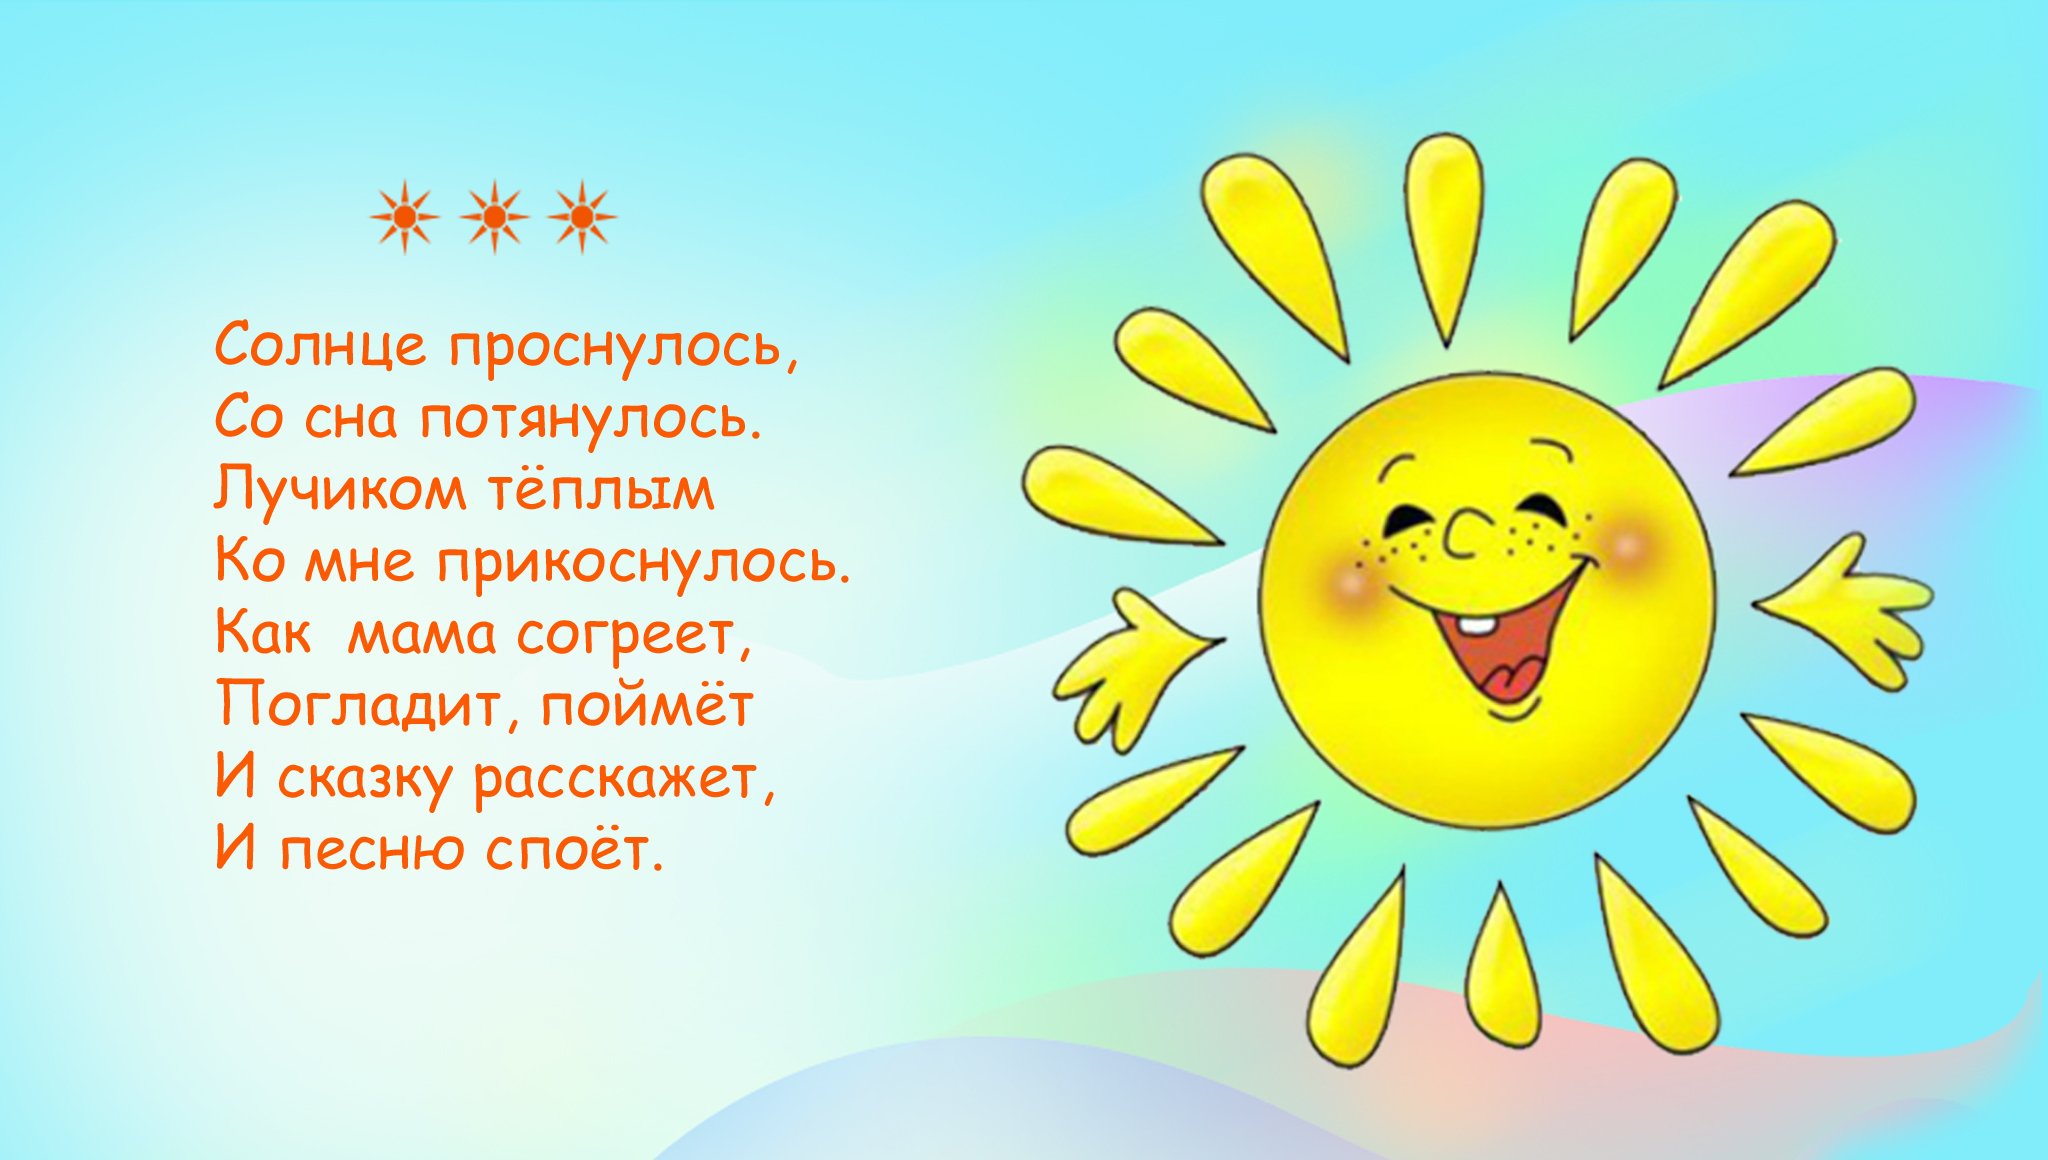 Это солнце это солнце замечательное солнце. Солнышко картинка. Стихотворение про солнышко для детей. Стишки для детей про солнце. Стих про солнце для детей.